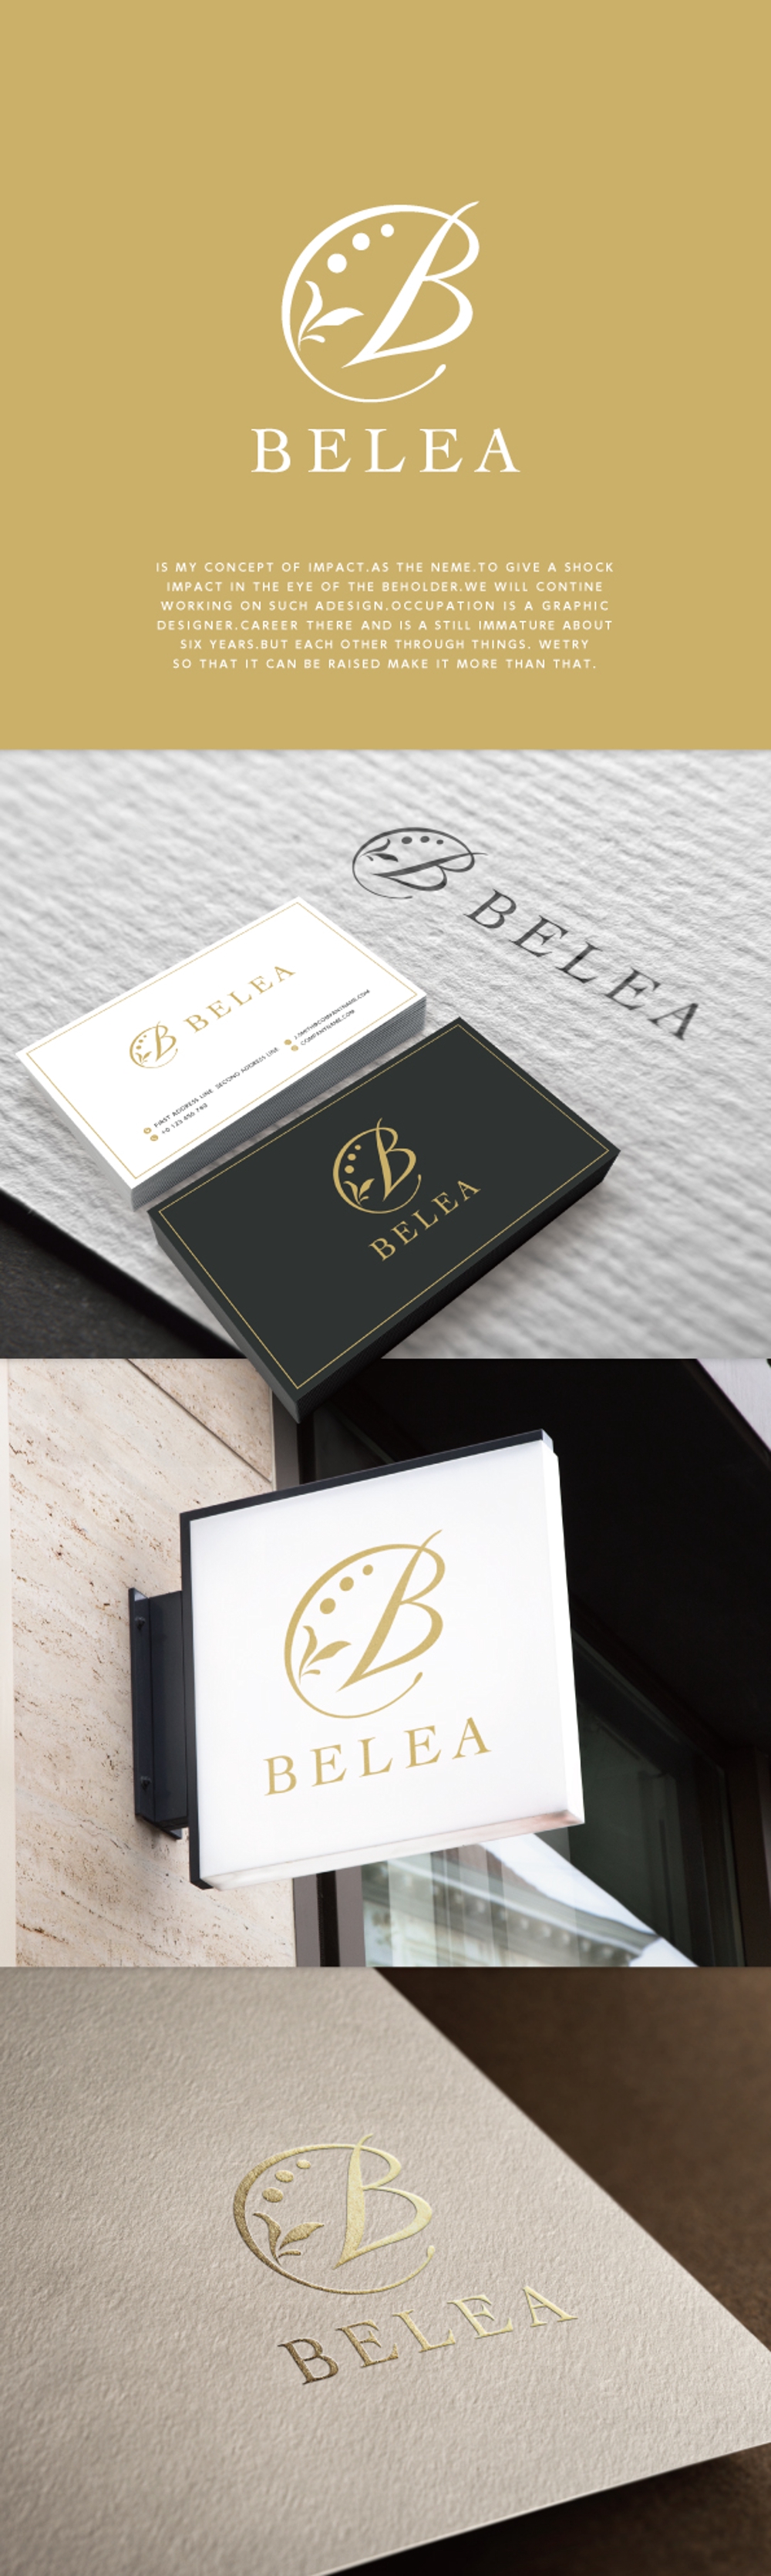 新規　美容室「BELEA (ビレア)」のロゴ